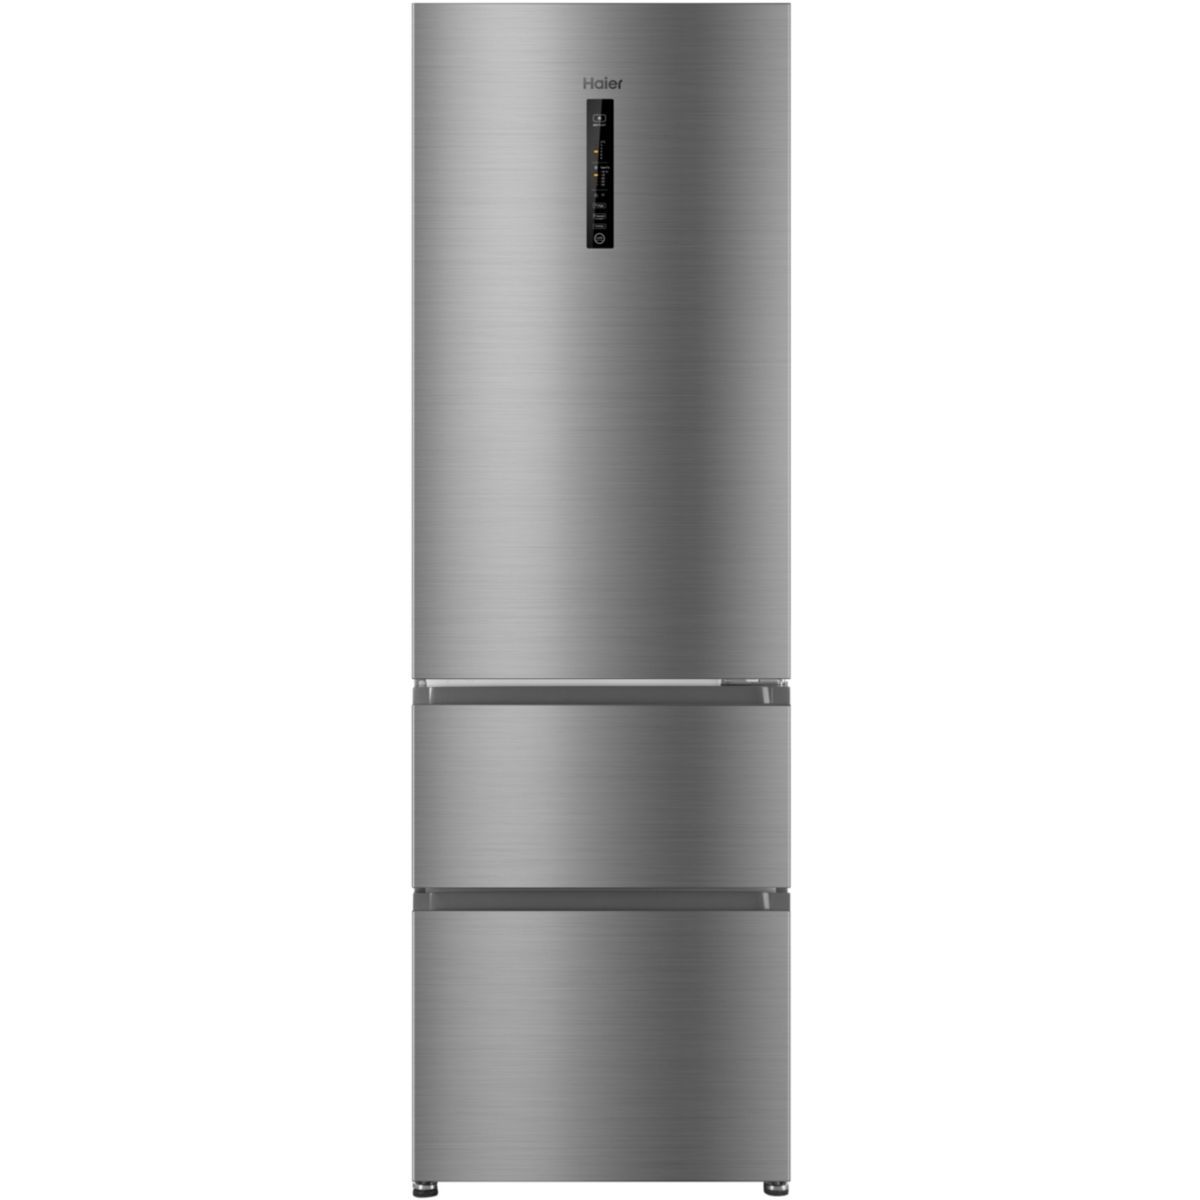 Купить холодильник 5 элемент. Холодильник Haier a2f637cxmv. Холодильник Хайер c2f636cxmv. Холодильник ATLANT хм 4425-049 ND. ATLANT хм 4421-049 ND.